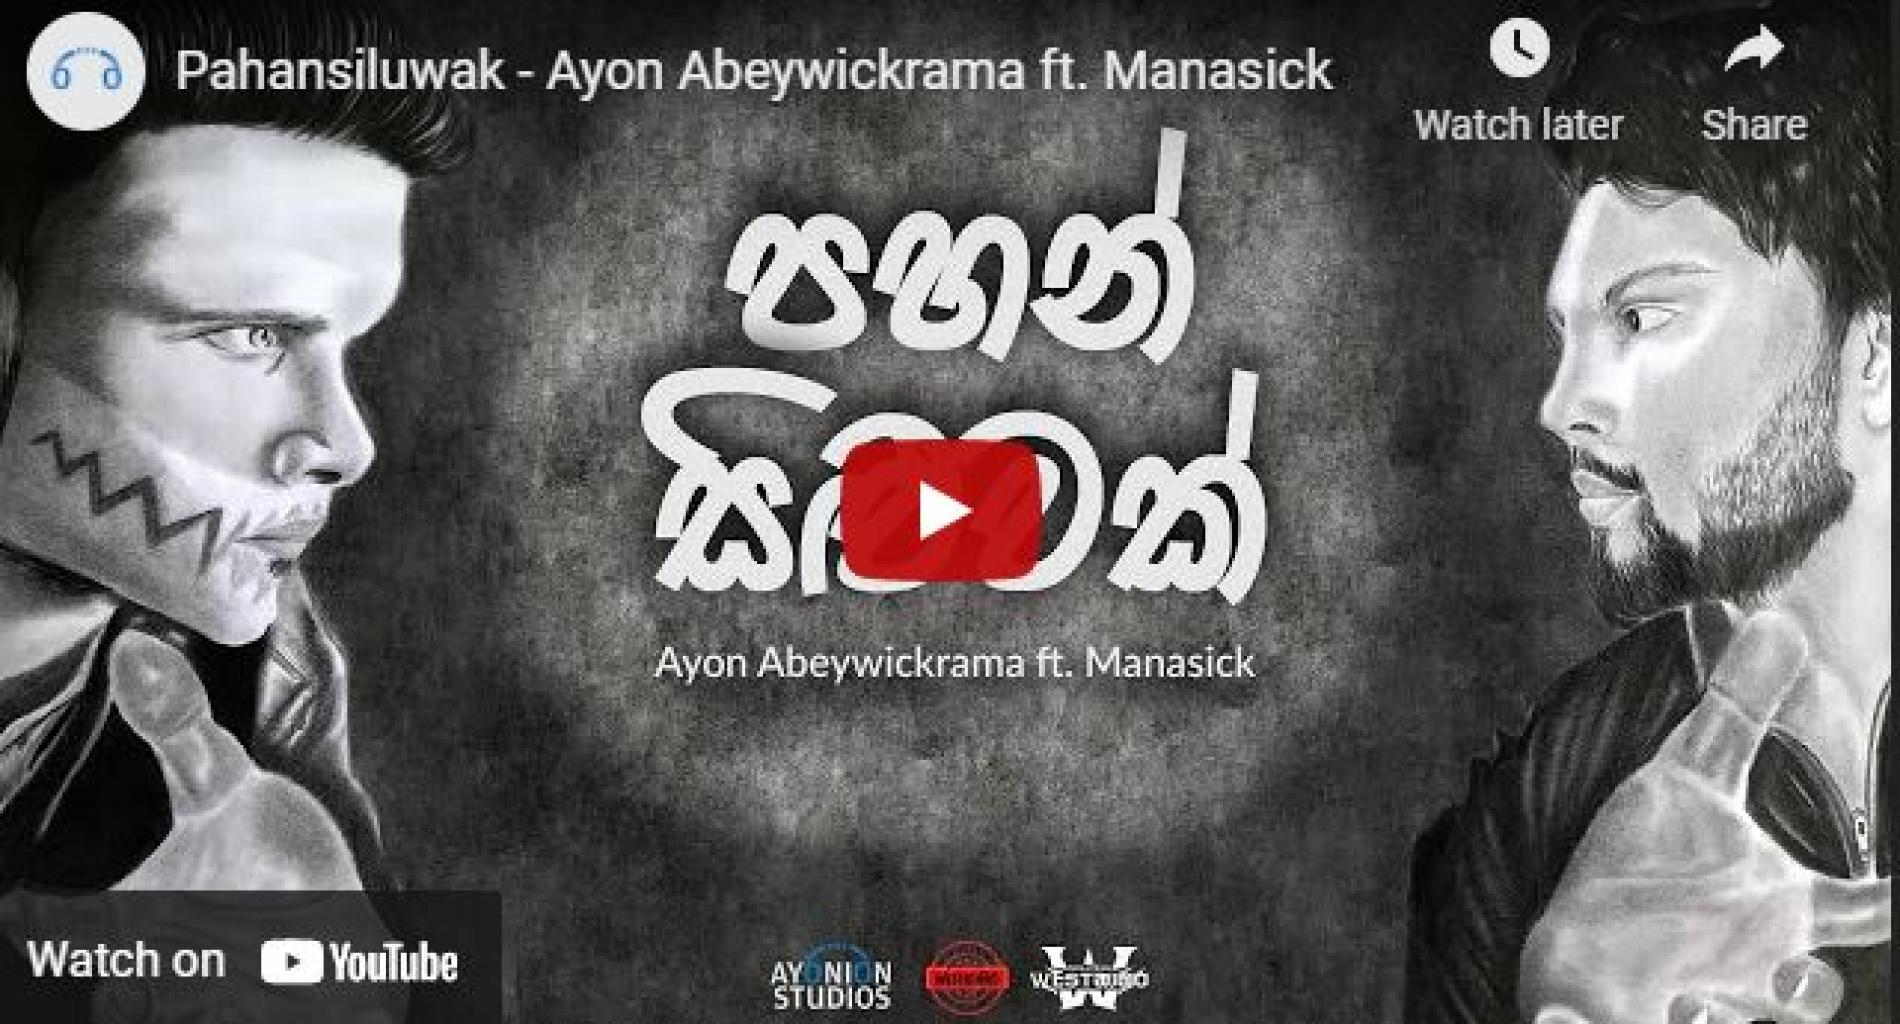 New Music : Pahansiluwak – Ayon Abeywickrama ft Manasick